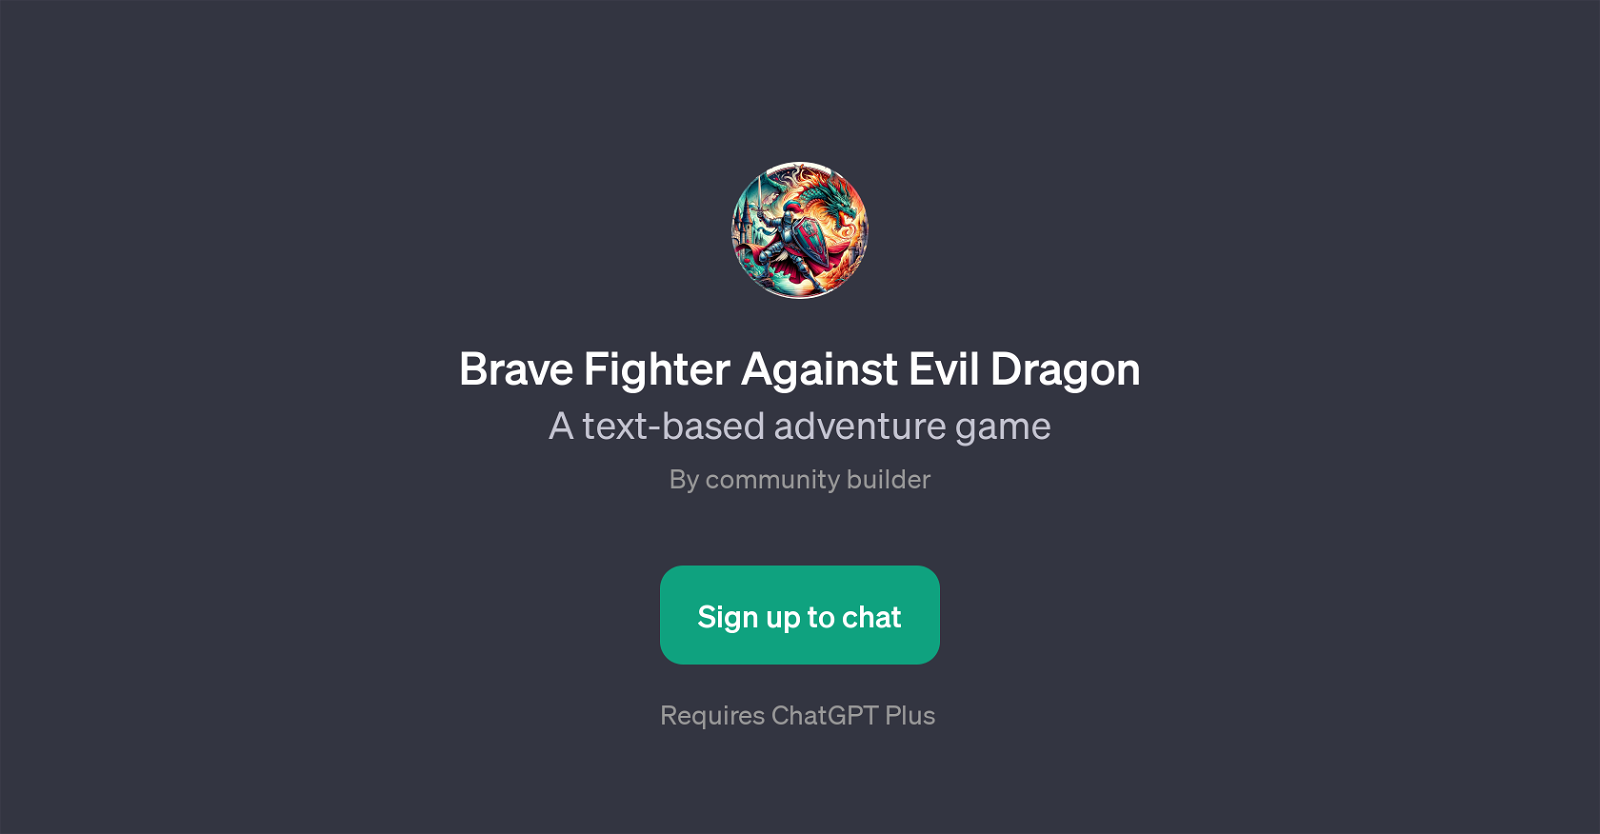 Brave Fighter Against Evil Dragon website